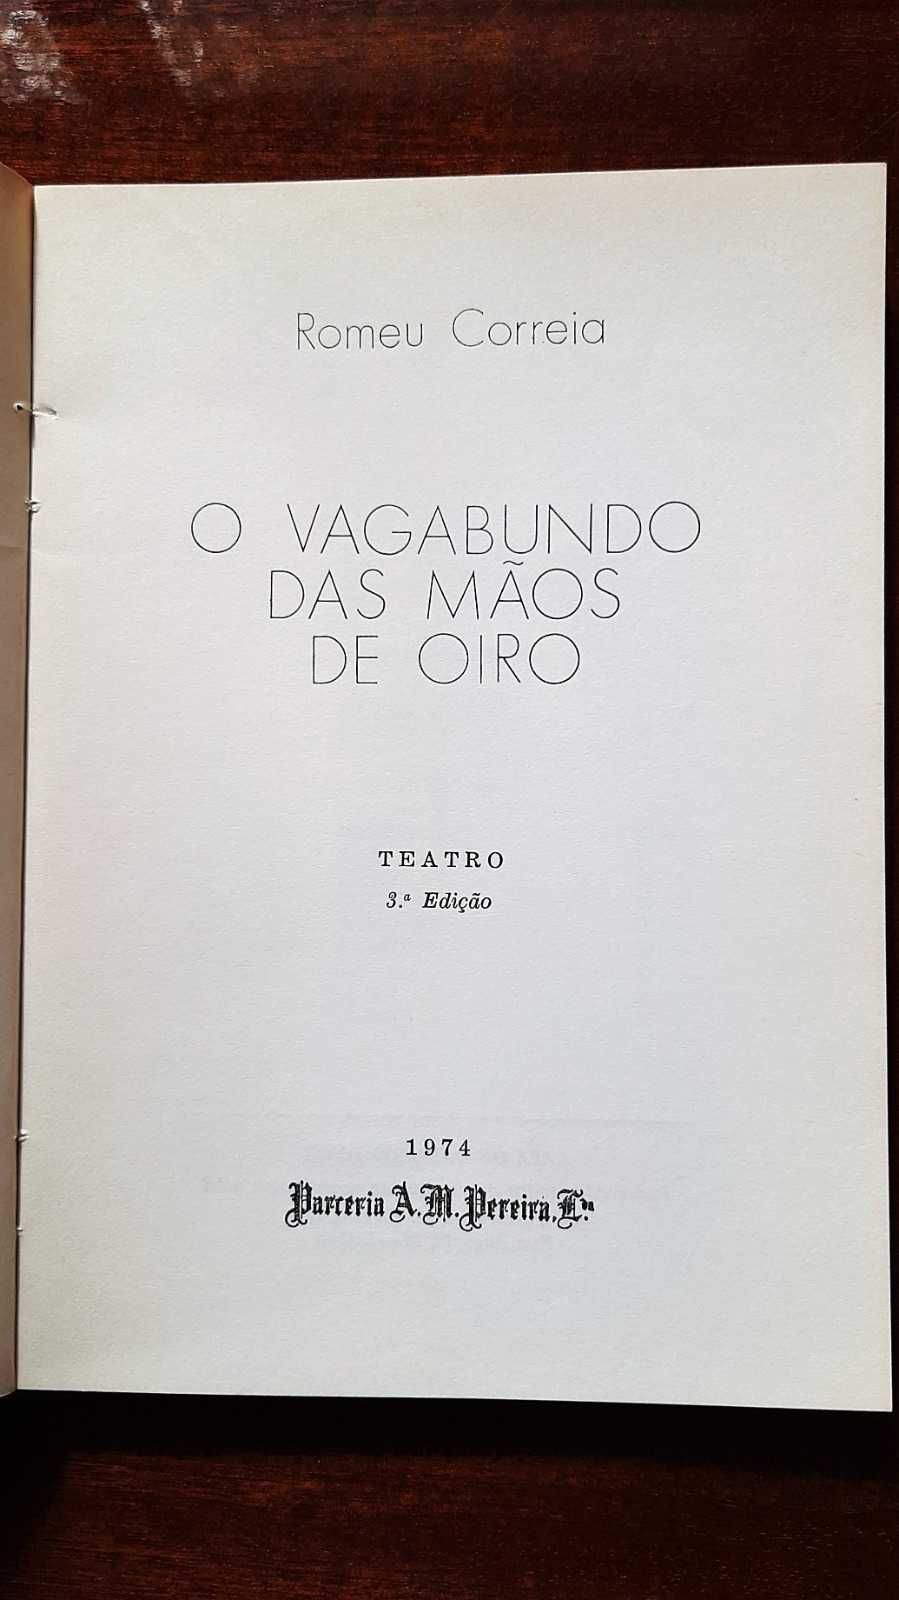 livro: Romeu Correia "O vagabundo das mãos de oiro"